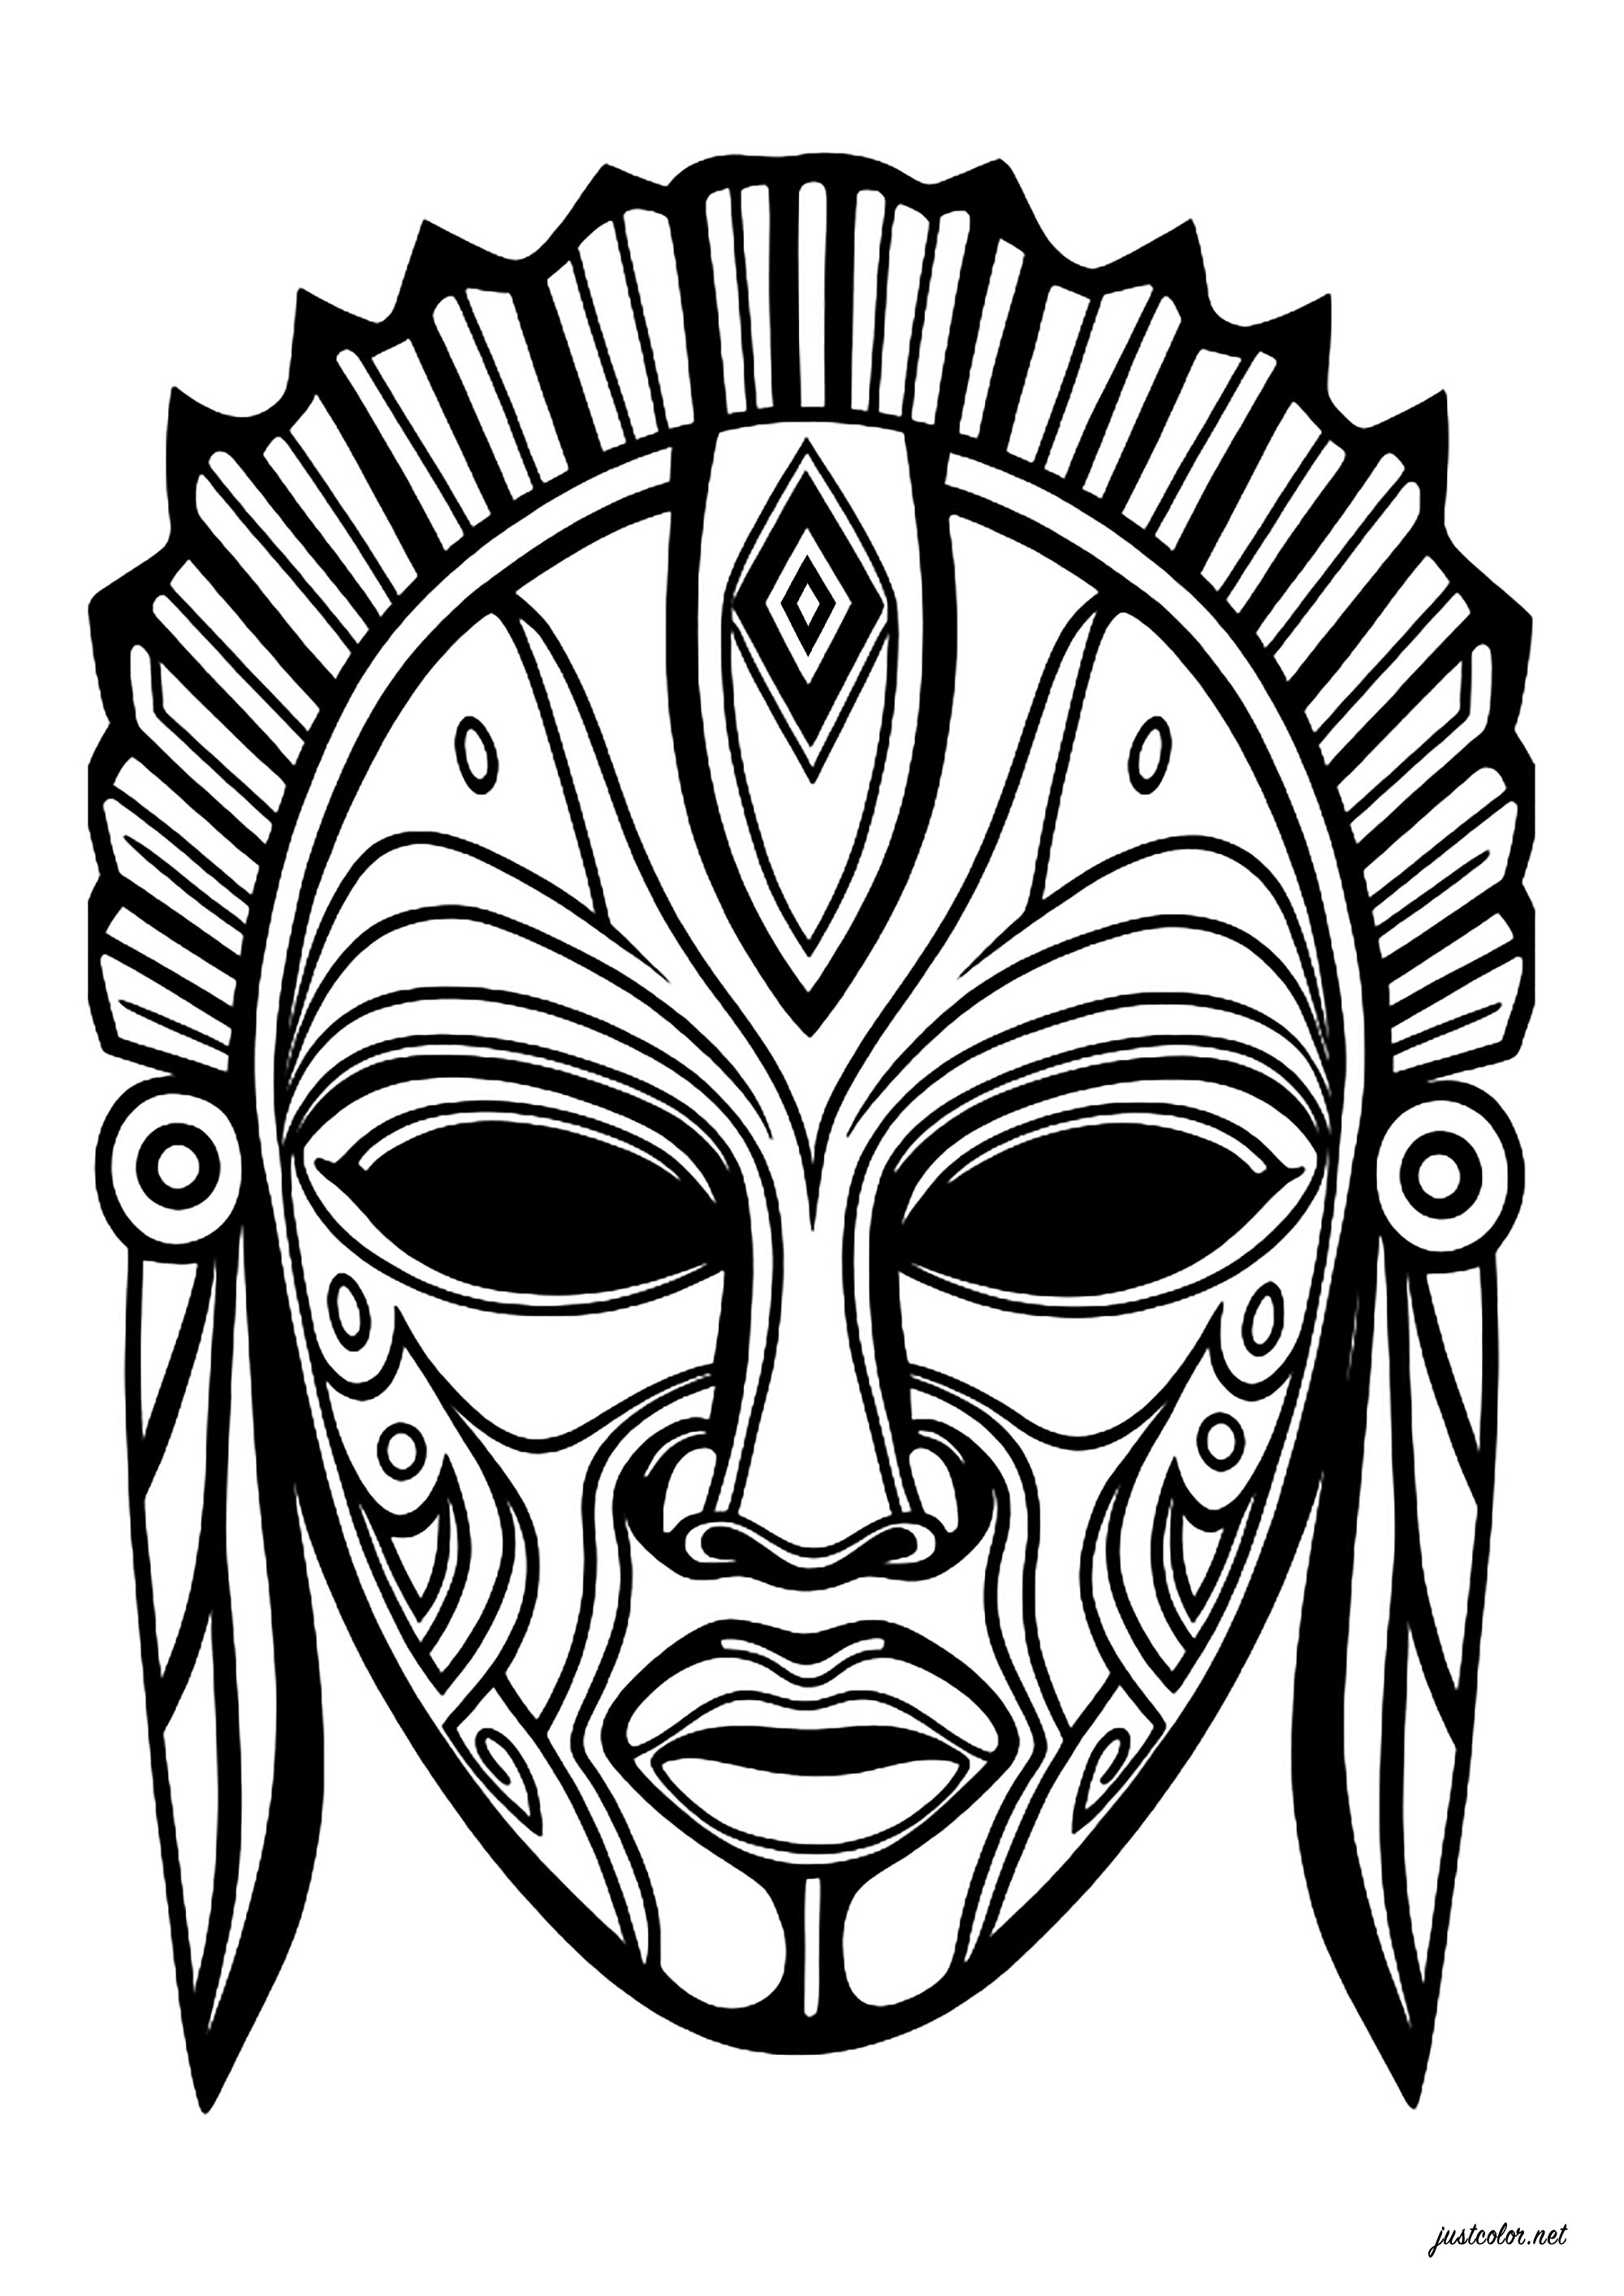 Maschera immaginaria, ispirata alle maschere africane. Molti modelli interni, che consentono di colorare la maschera con molti colori